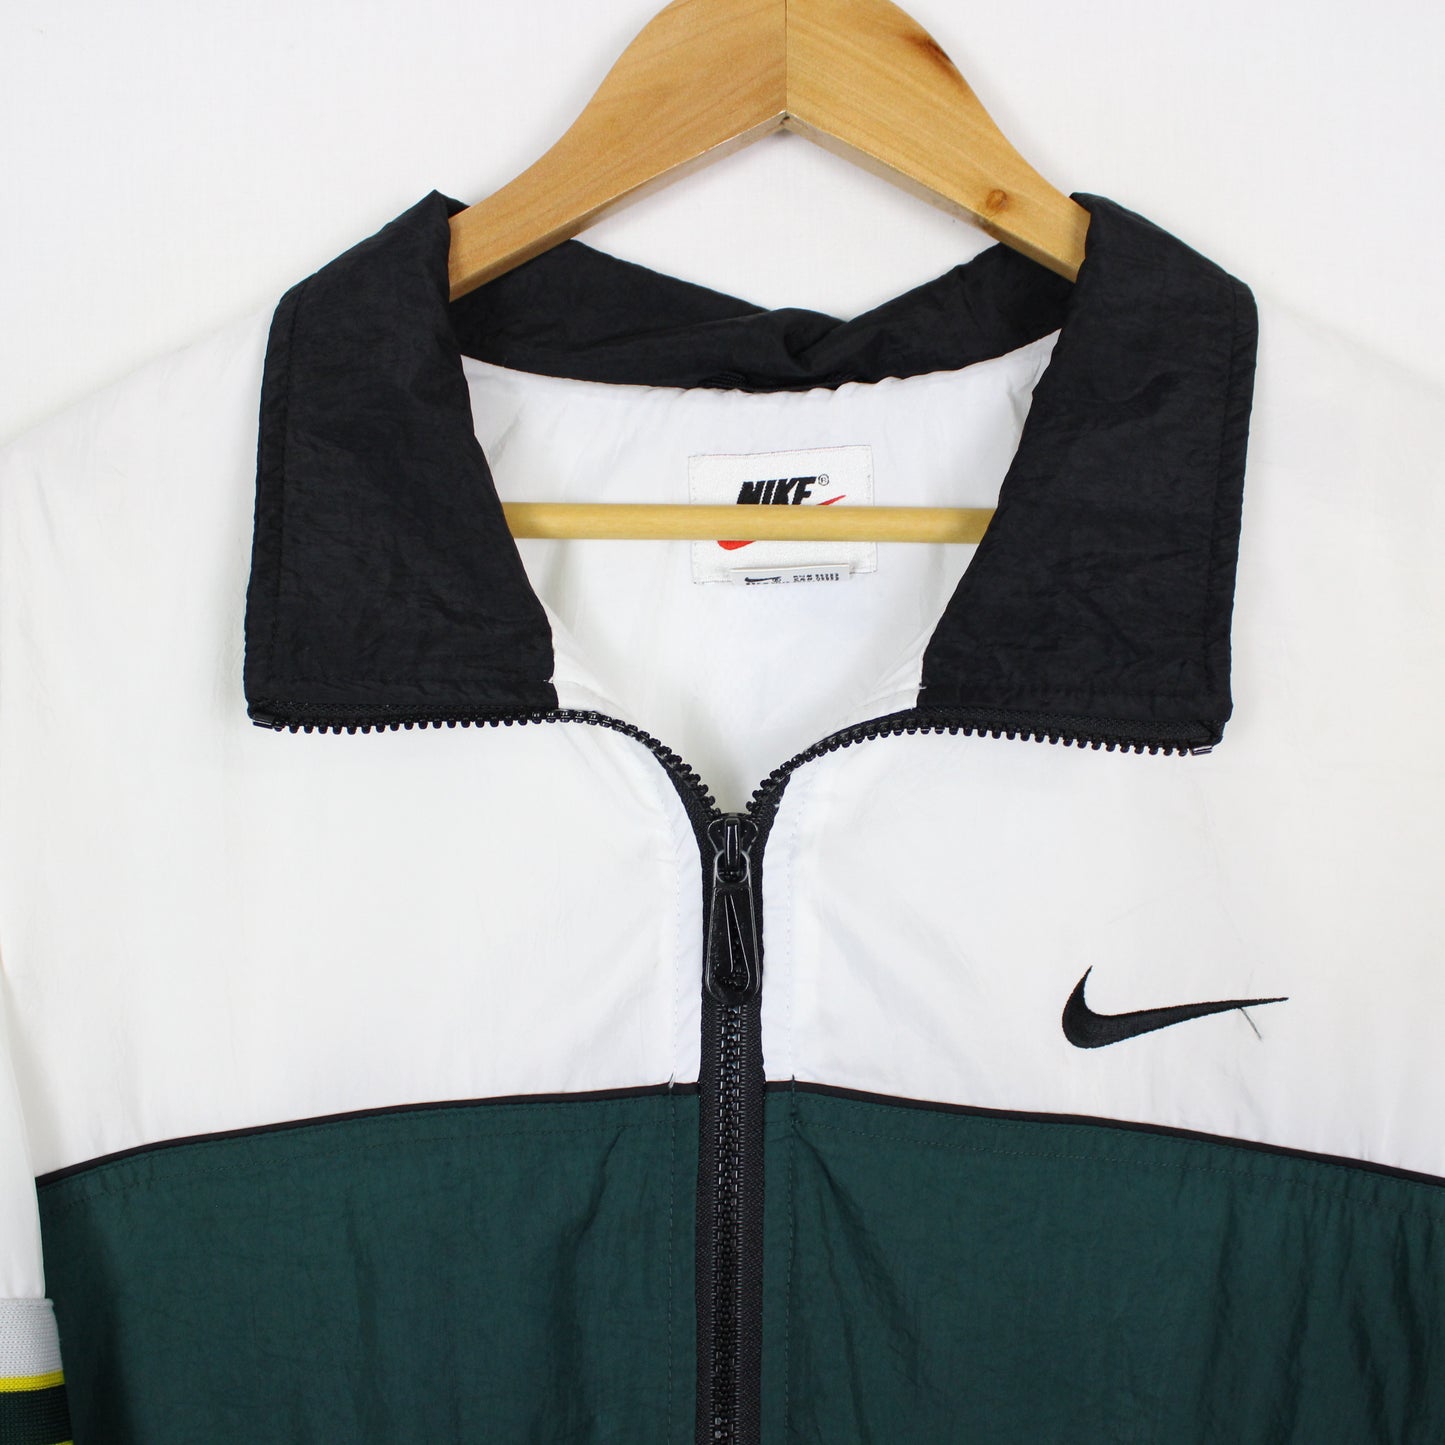 Vintage Nike Colour Block Jacket - XL